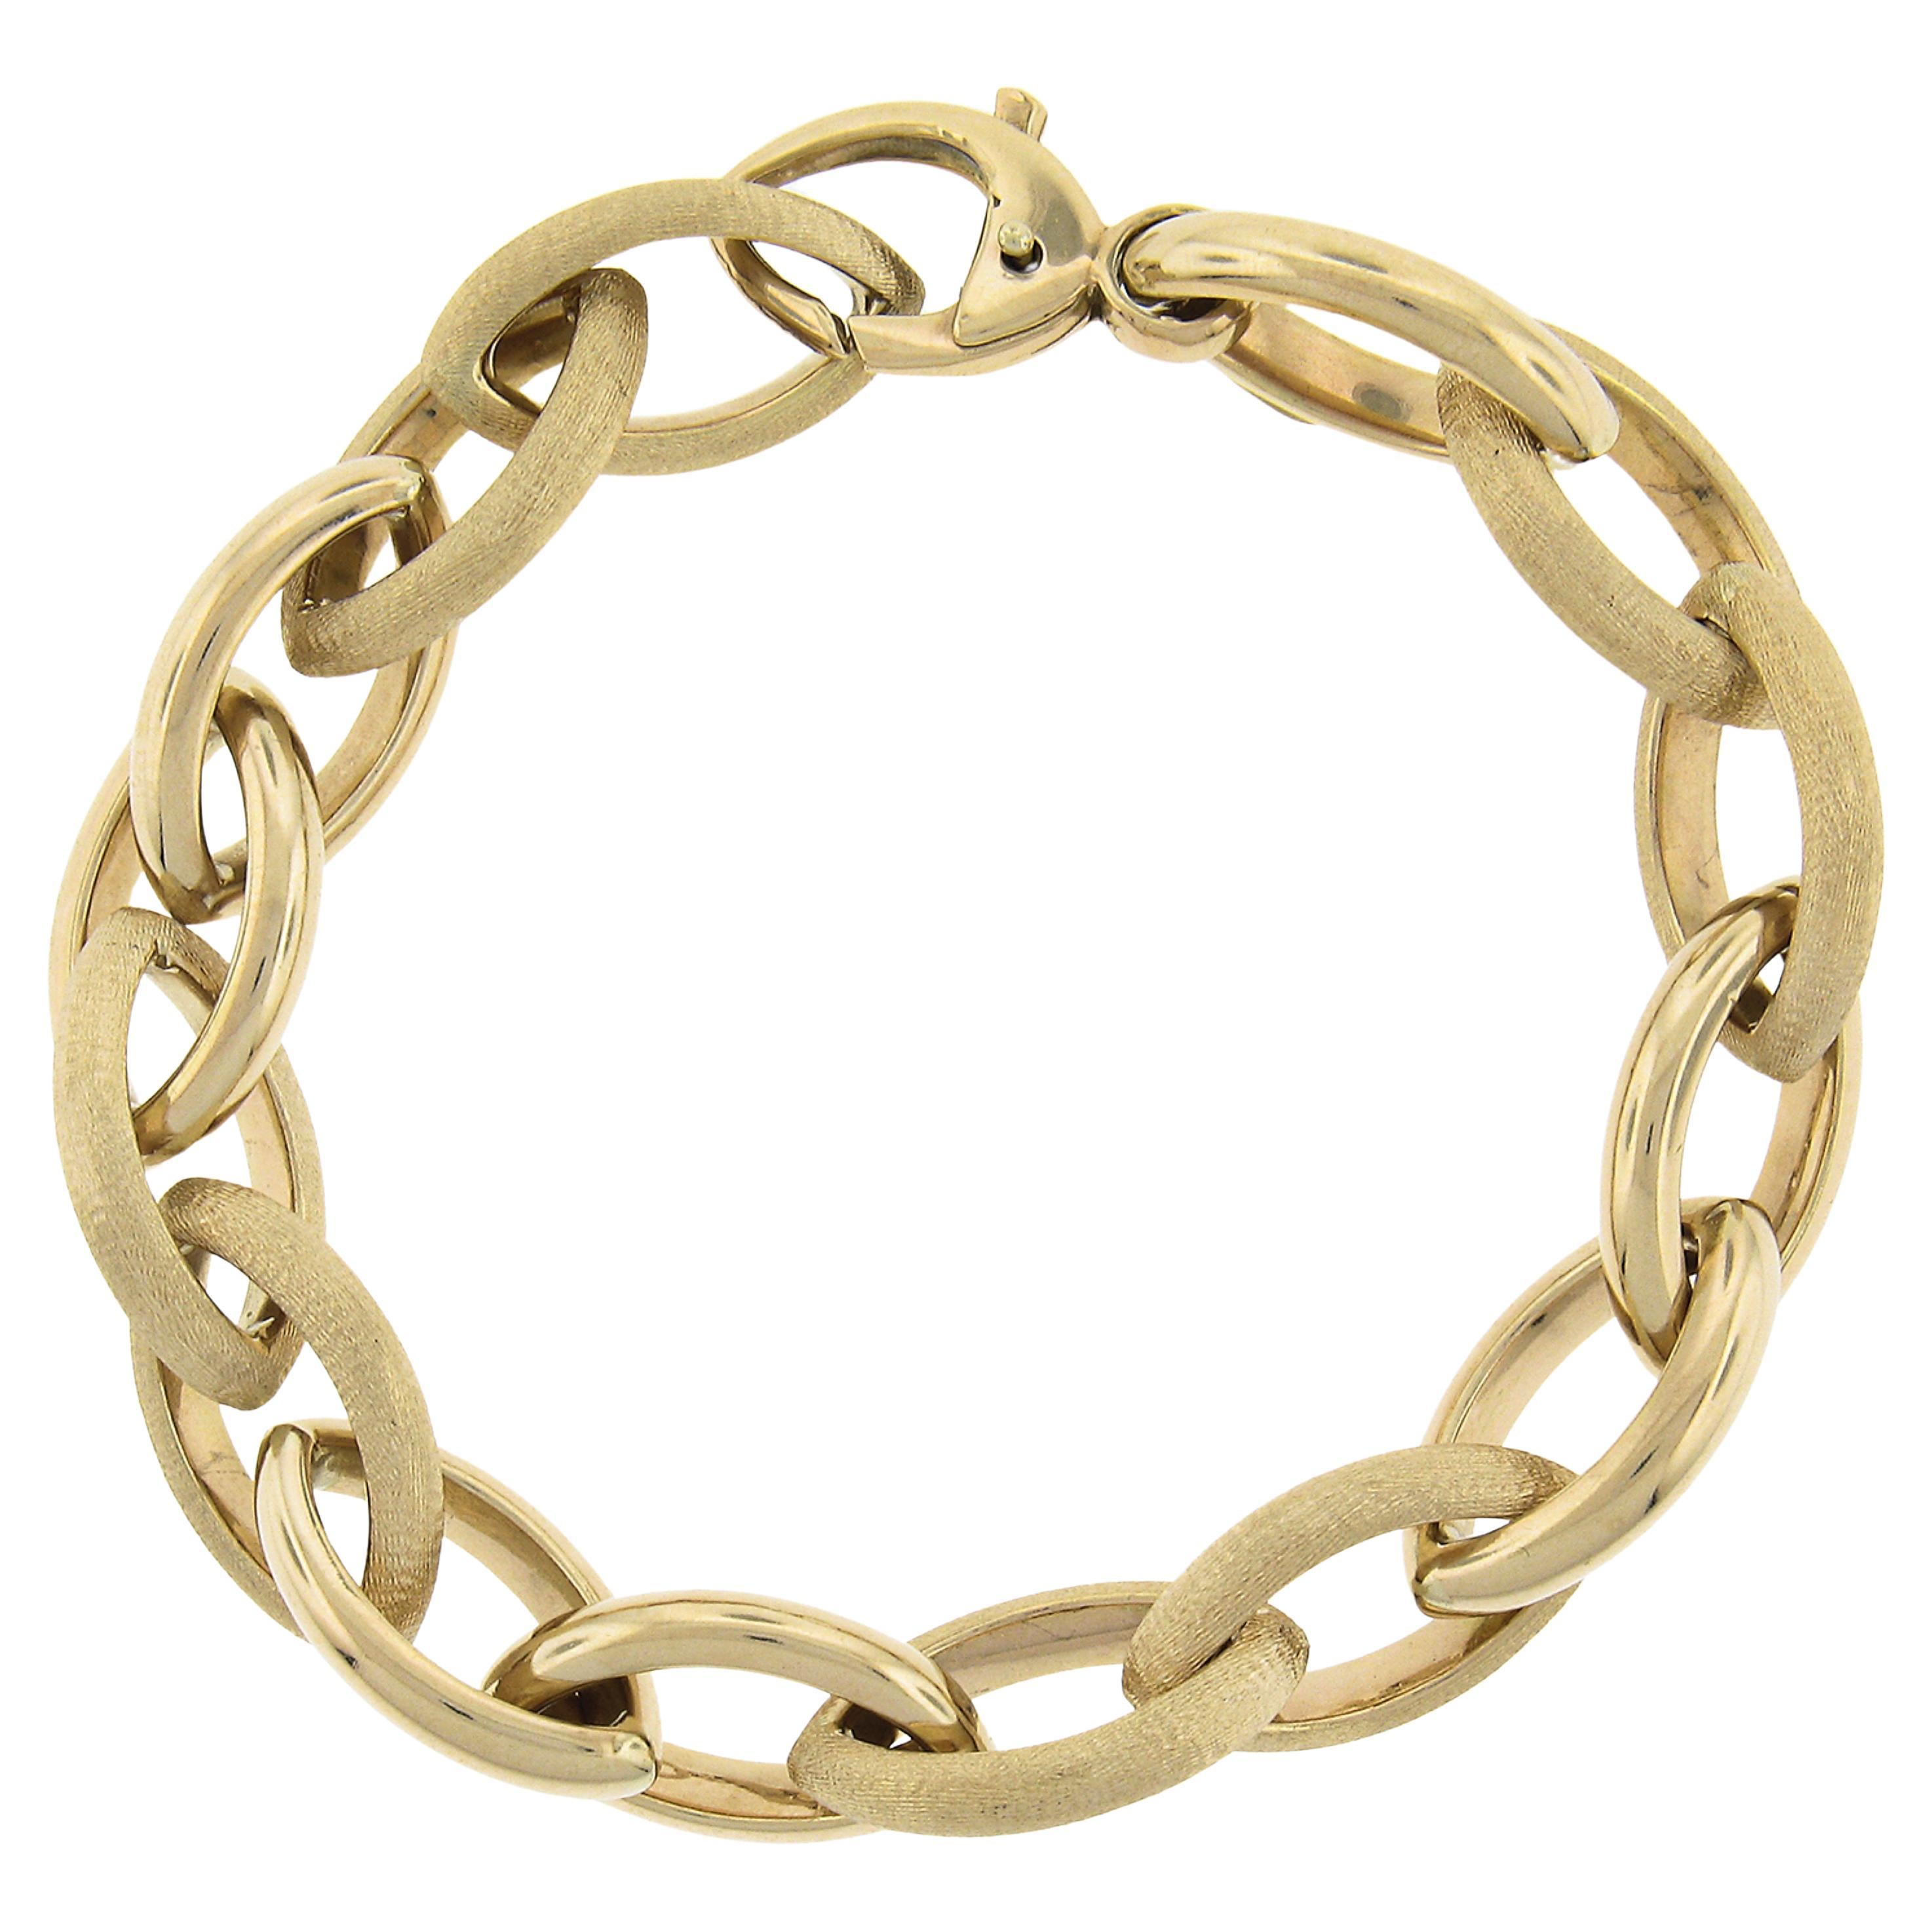 Bracelet italien en or 14 carats brossé et poli en forme de marquise ouverte